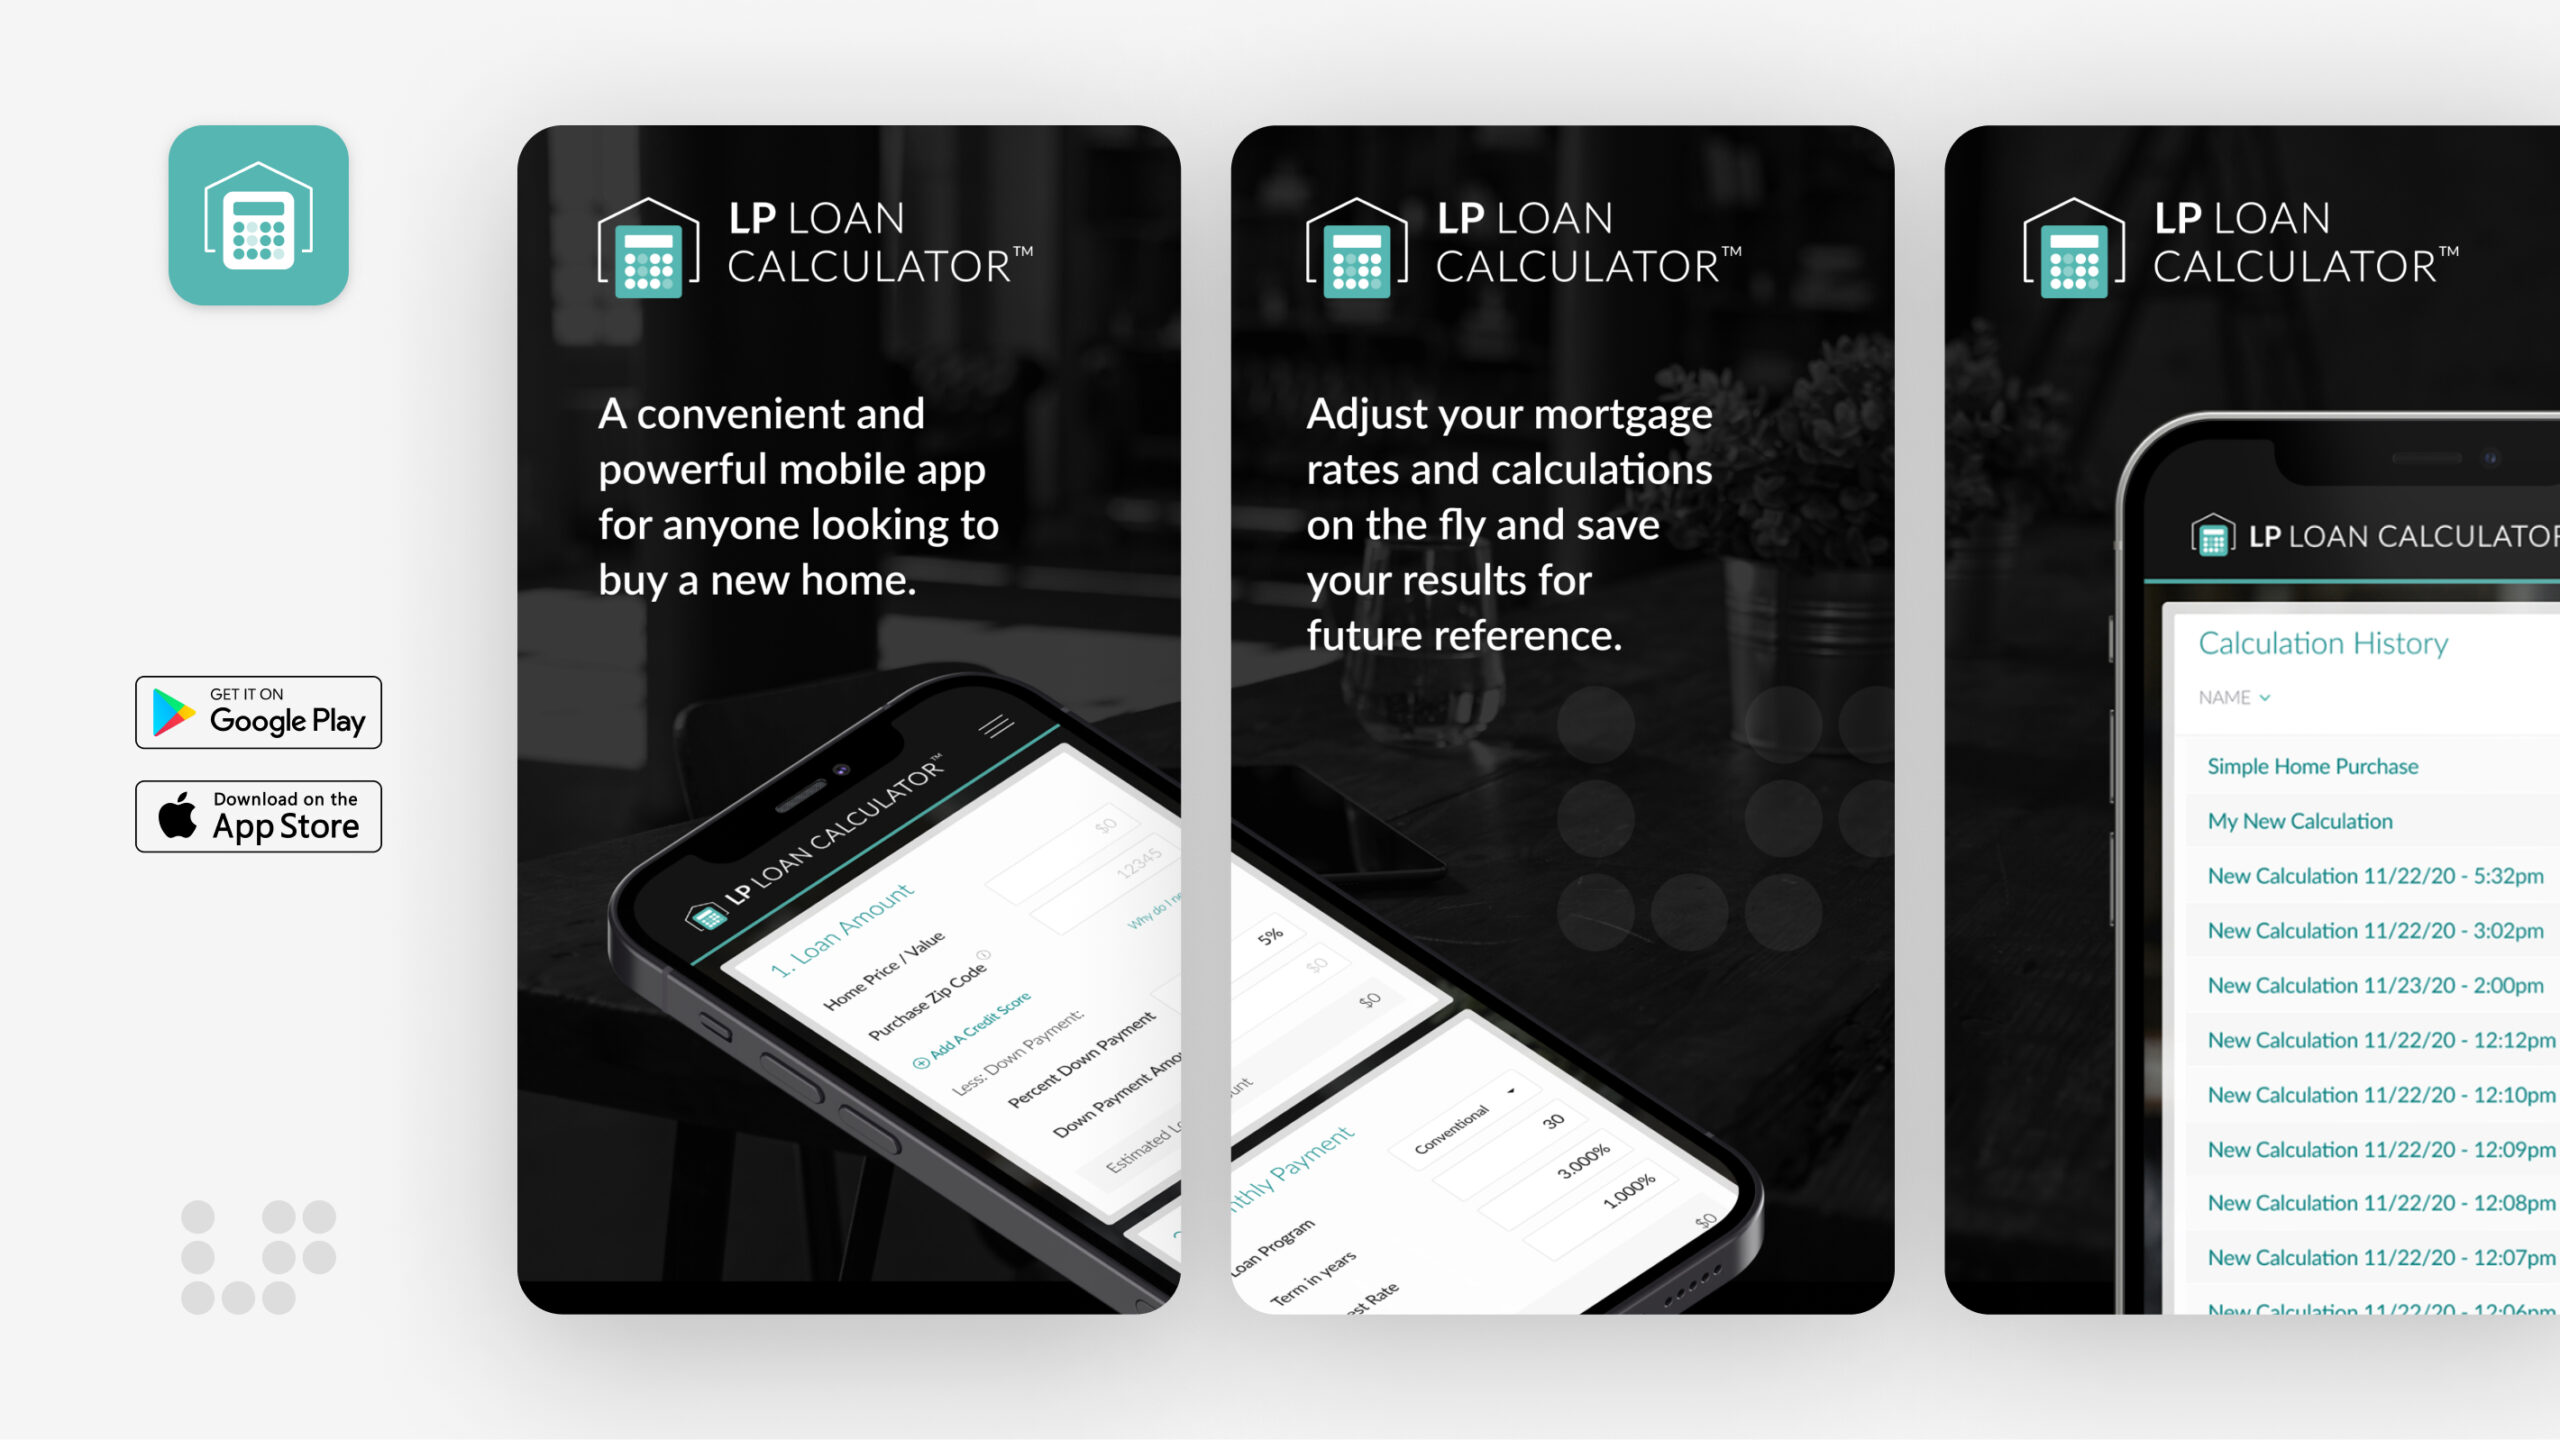 LP Loan Calculator™ App Store Sample Screens